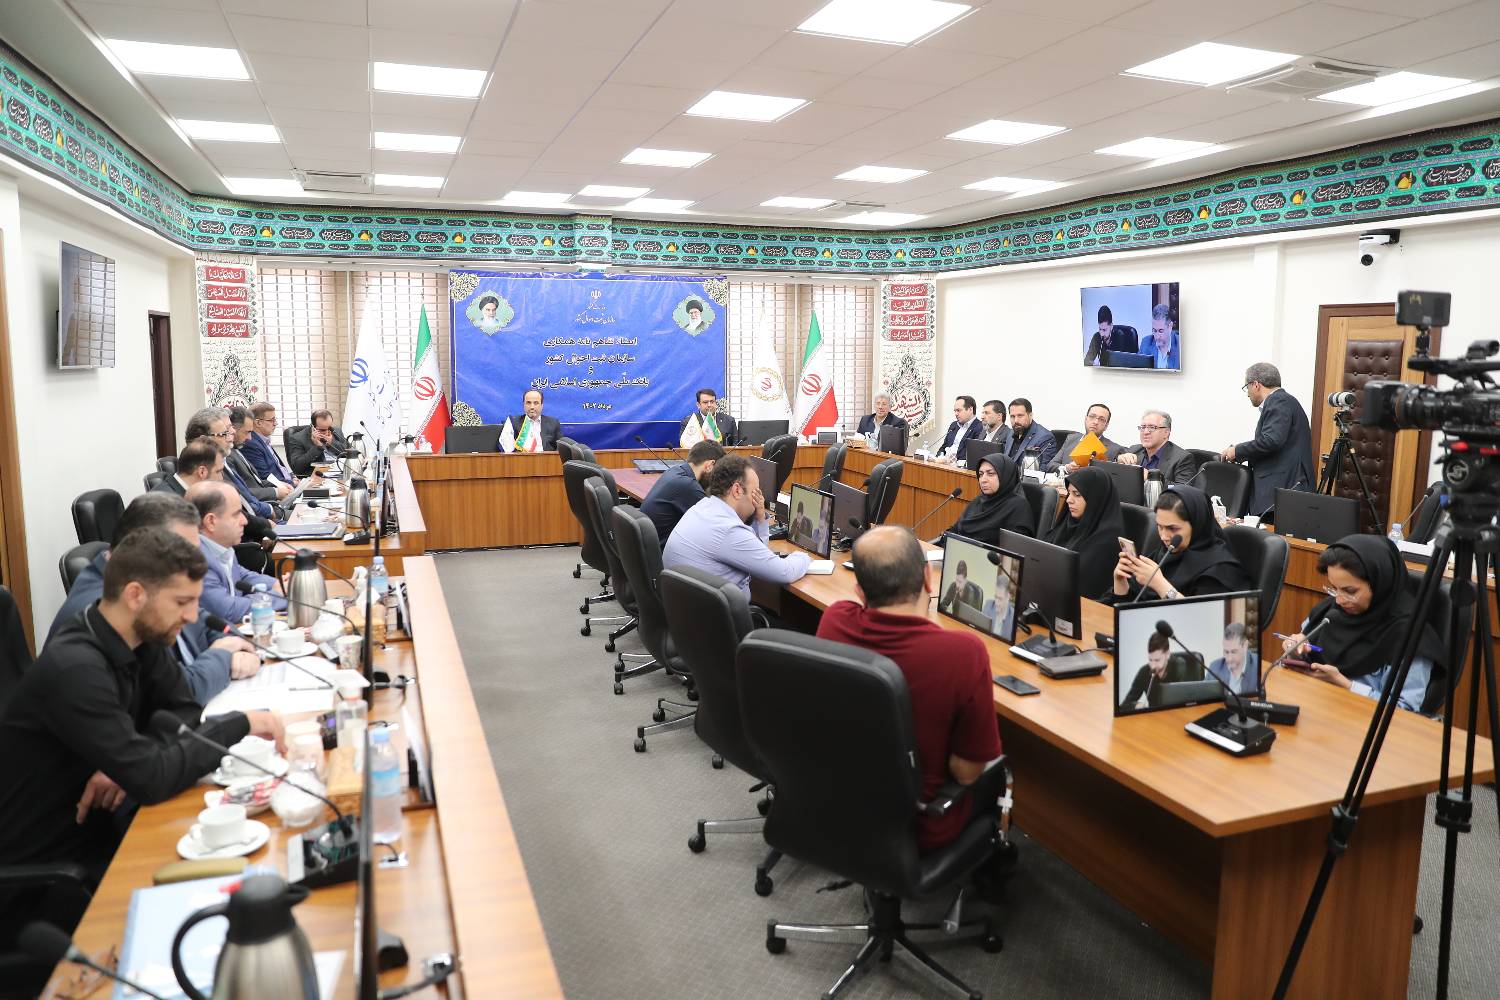 توسعه خدمات الکترونیک، محور تفاهم میان بانک ملی ایران و سازمان ثبت احوال کشور